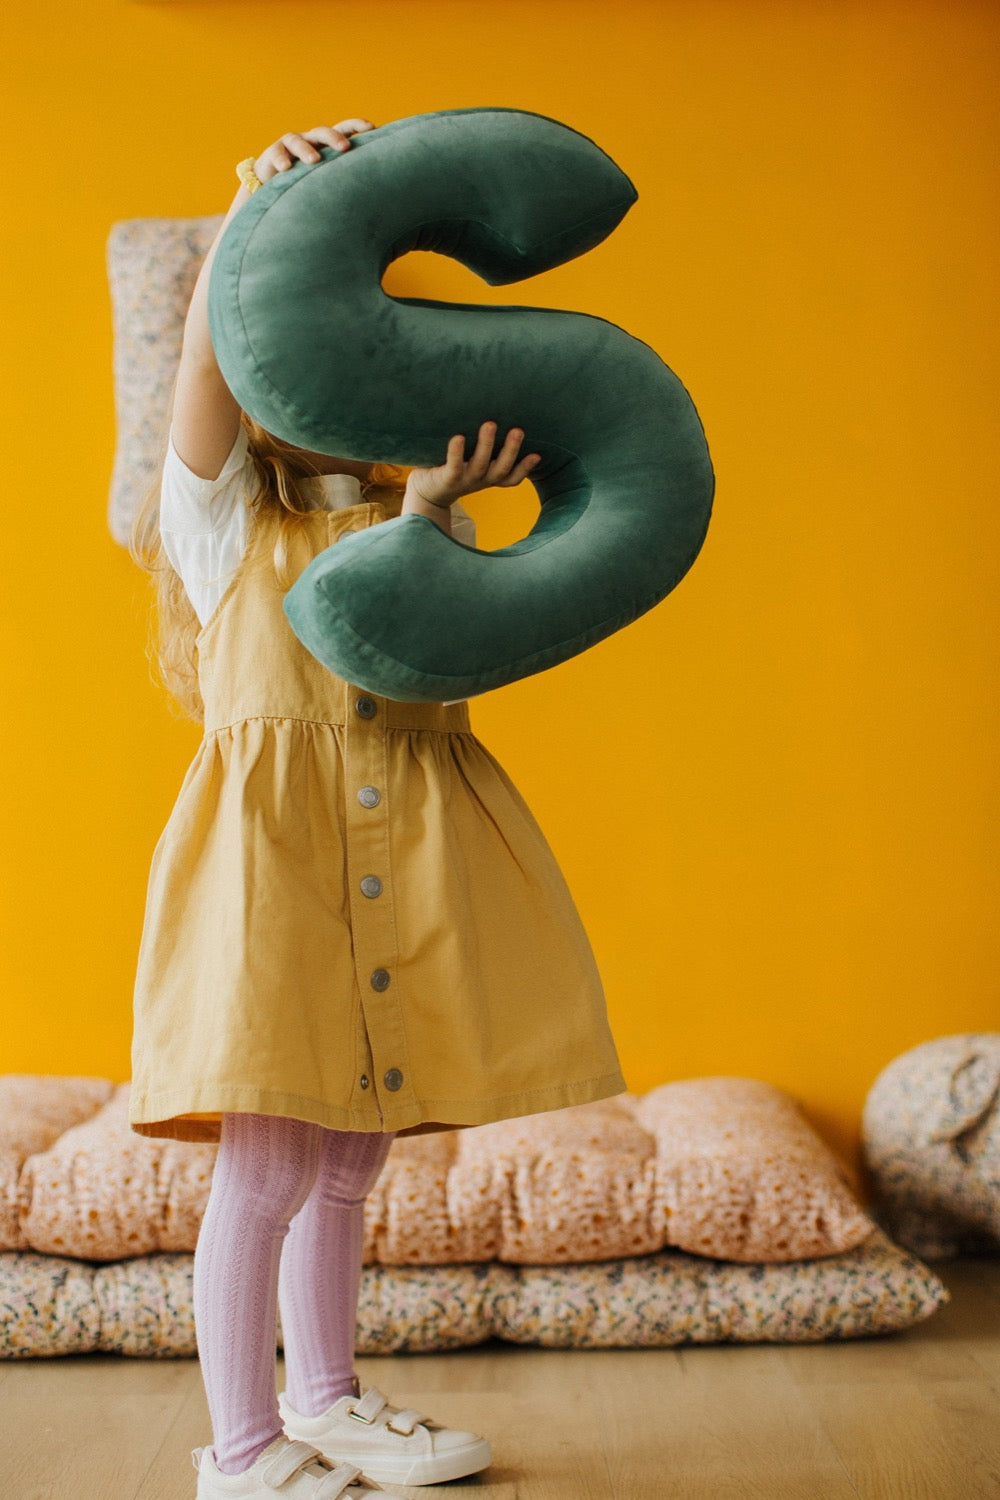 Mała dziewczynka trzyma w rękach poduszkę w kształcie S. Jest w trakcie zabawy poduszkami literkami